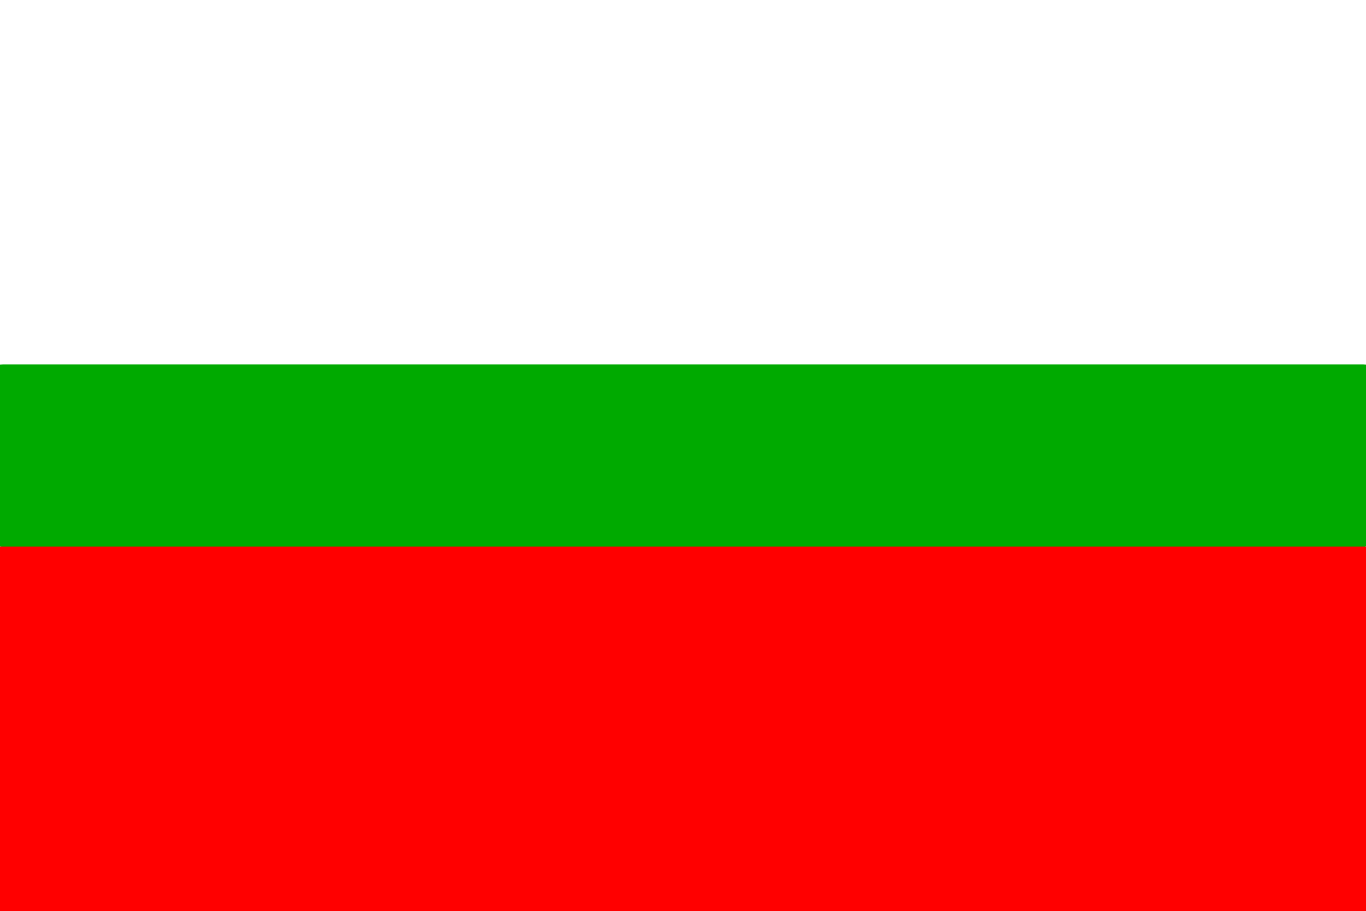 Obrázek vlajky města Rychnov Nad Kněžnou v rozlišení 1366x911 Královéhradecký kraj Rychnovská vlajka 